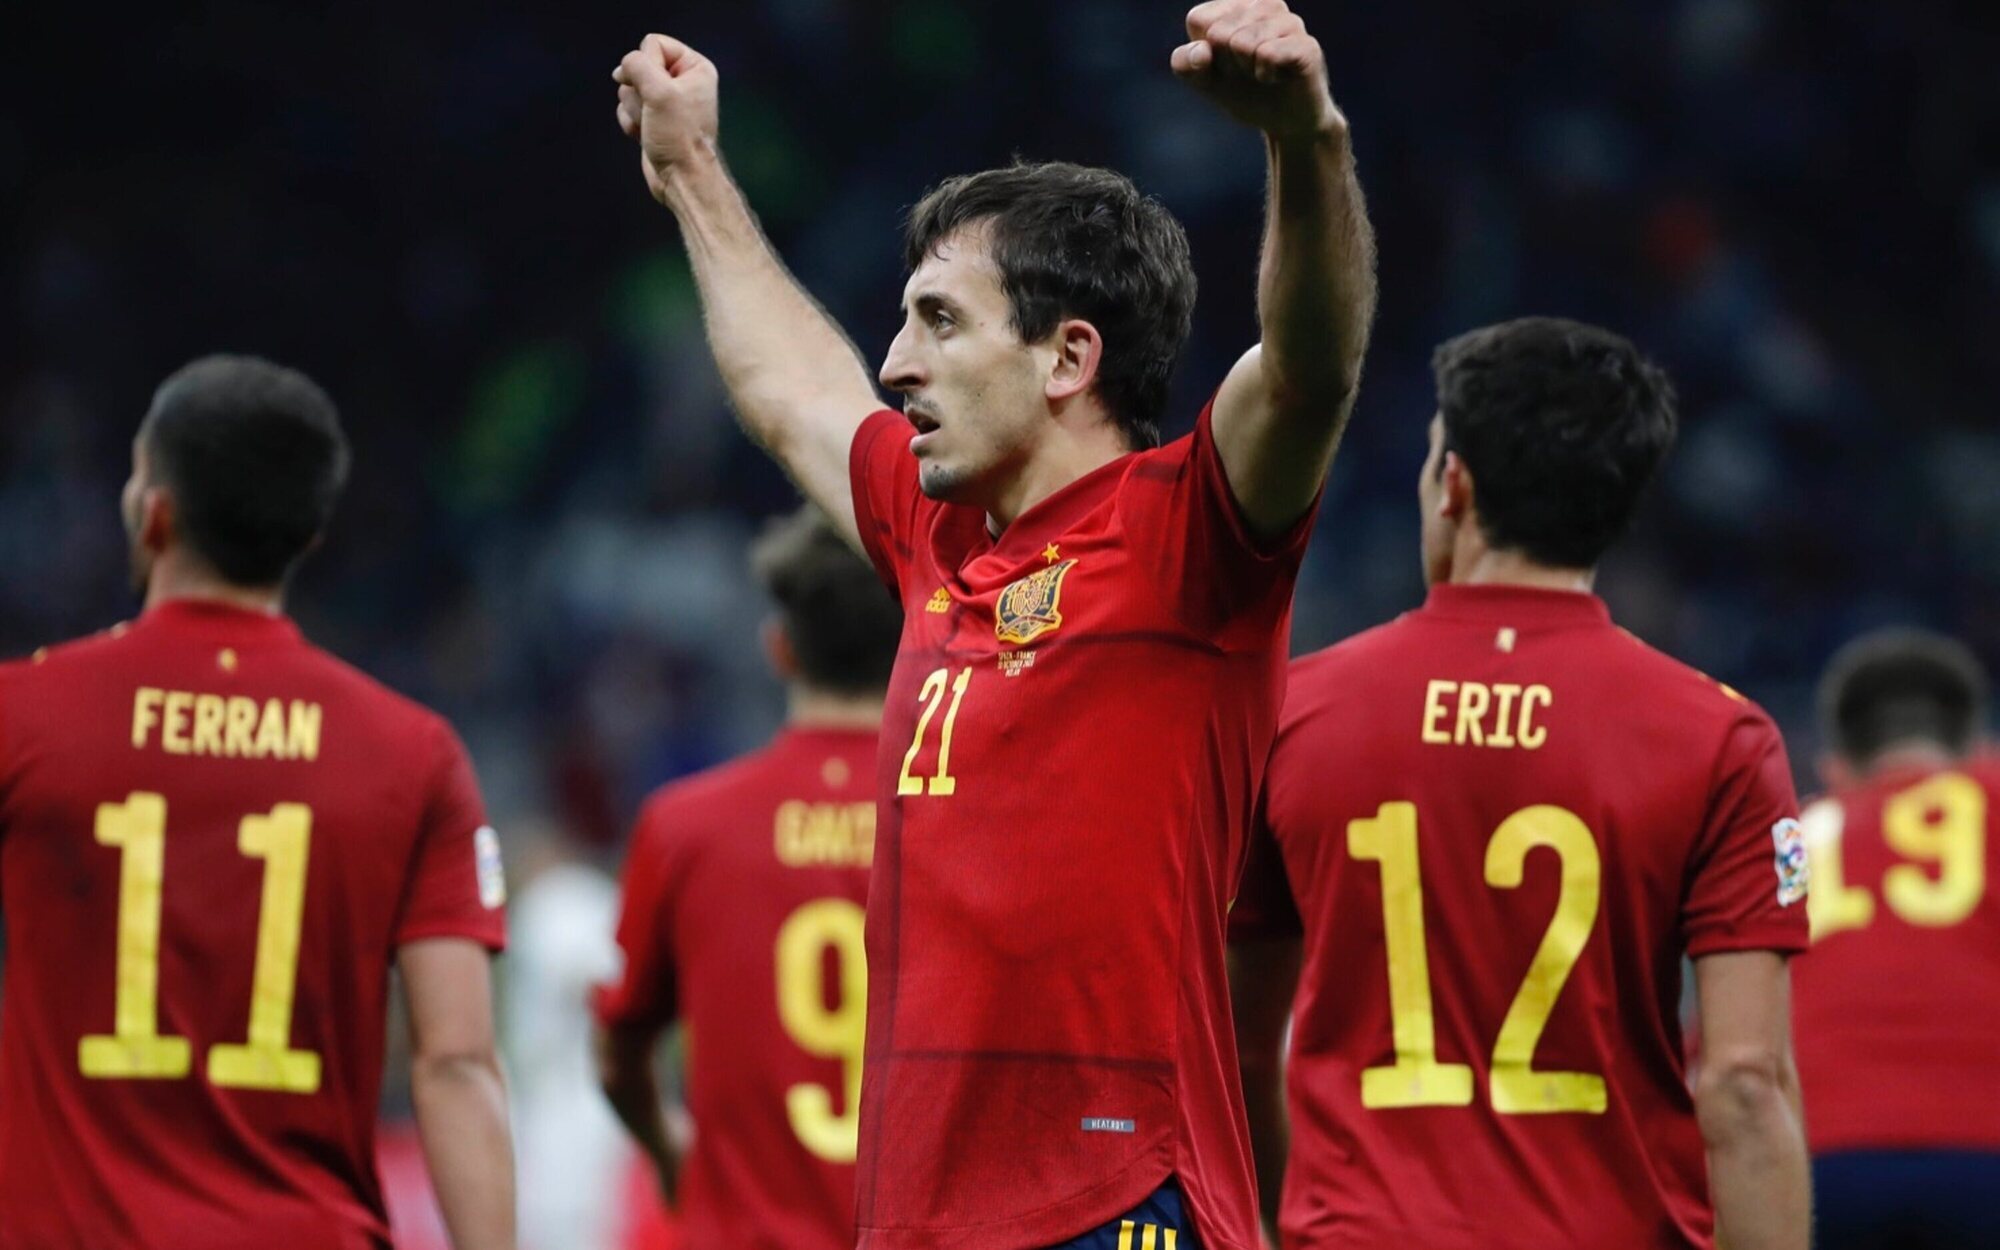 La Selección Española (42,1%) triunfa en su caída contra Francia e 'Infiel' (16,7%) resiste y sube con fuerza